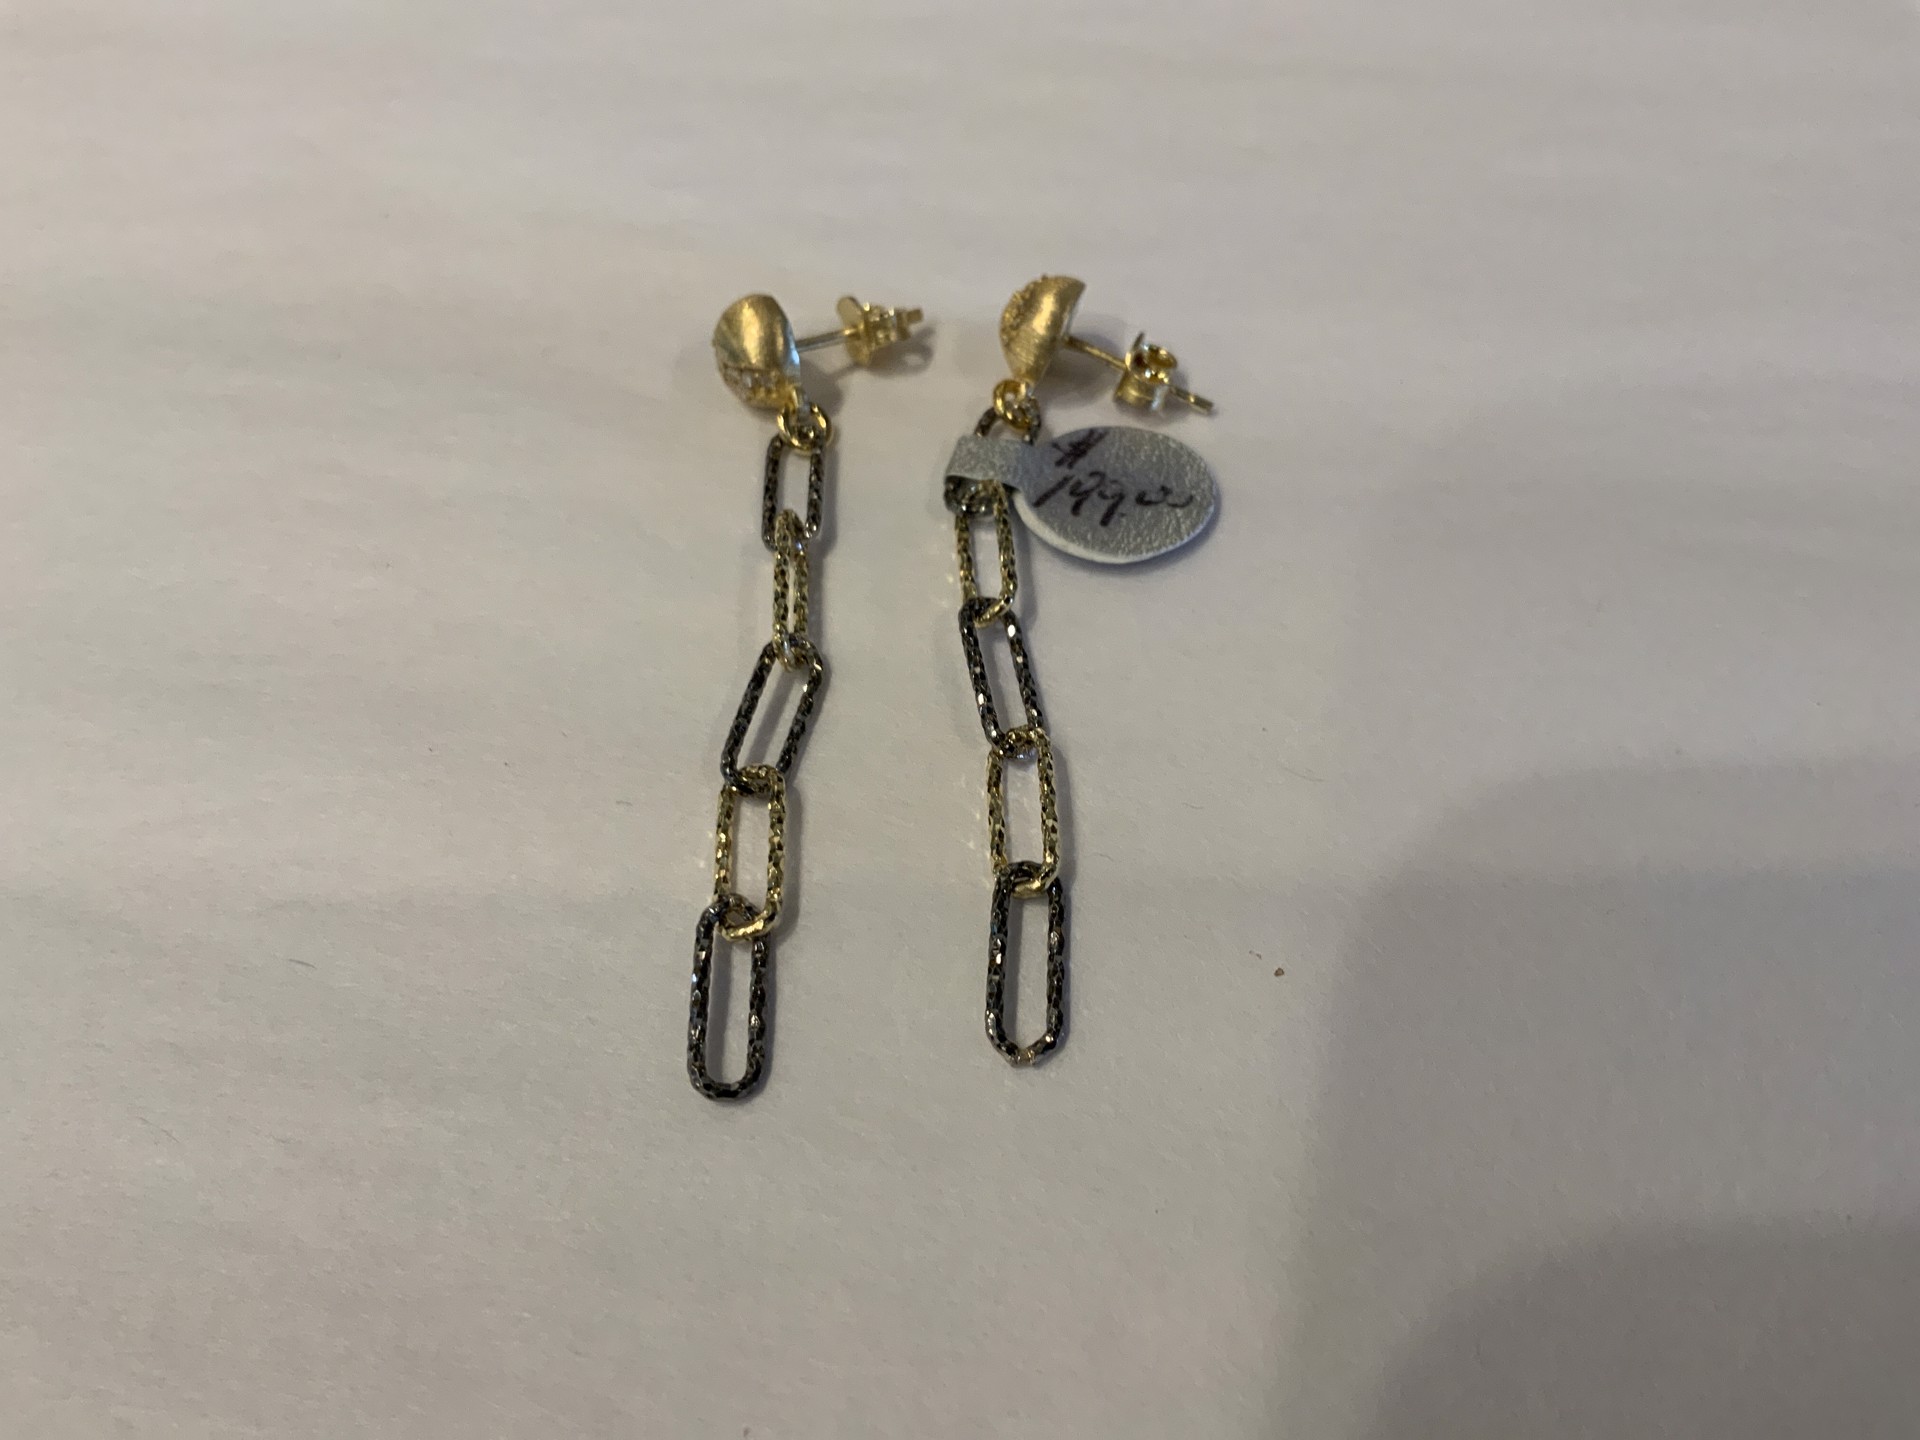 Two Tone Chain Earrings by Karen Birchmier